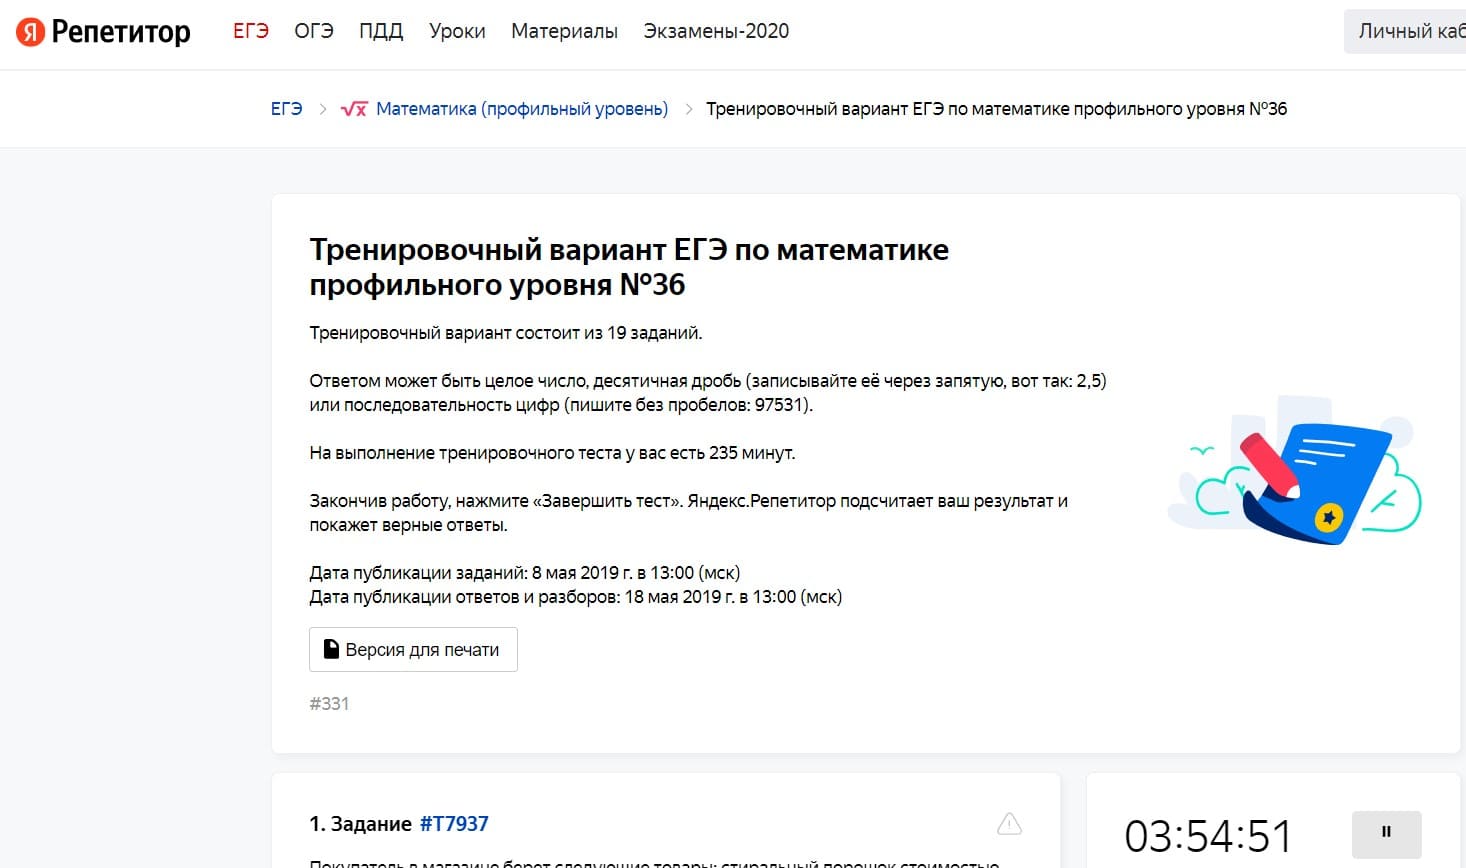 Подготовка к ЕГЭ по математике - Яндекс Репетитор (базовый уровень и профильный)